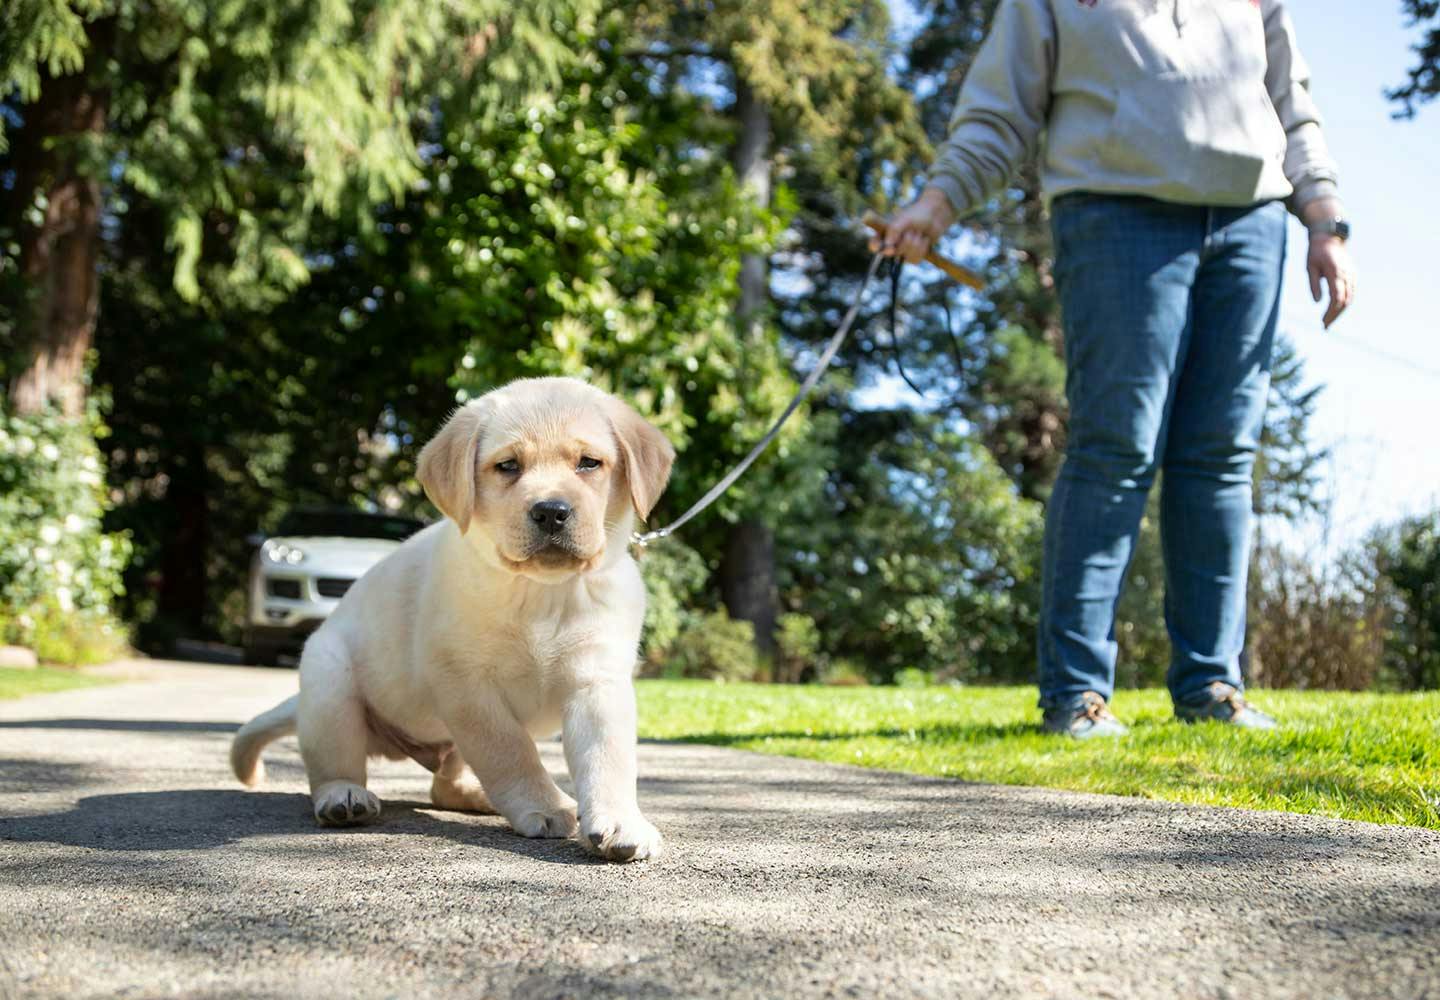 【リアドロ】仔犬とお散歩(A WALK WITH THE DOG)